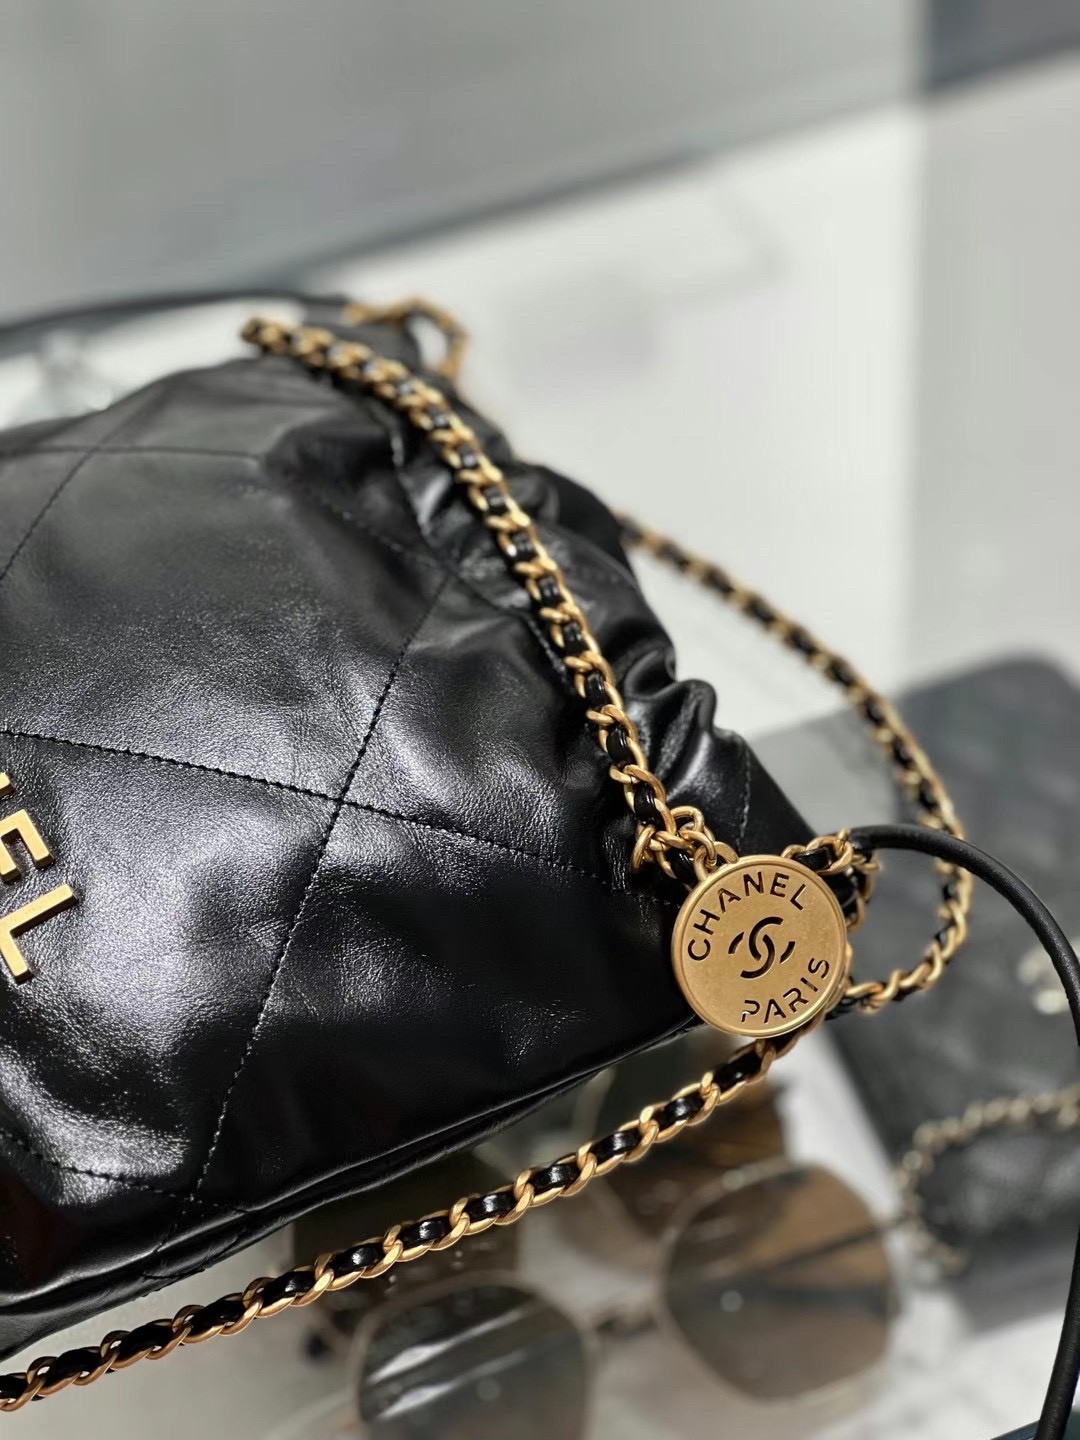 How to replica Chanel 22 bag mini？（2023 updated）-ఉత్తమ నాణ్యత నకిలీ లూయిస్ విట్టన్ బ్యాగ్ ఆన్‌లైన్ స్టోర్, రెప్లికా డిజైనర్ బ్యాగ్ రు